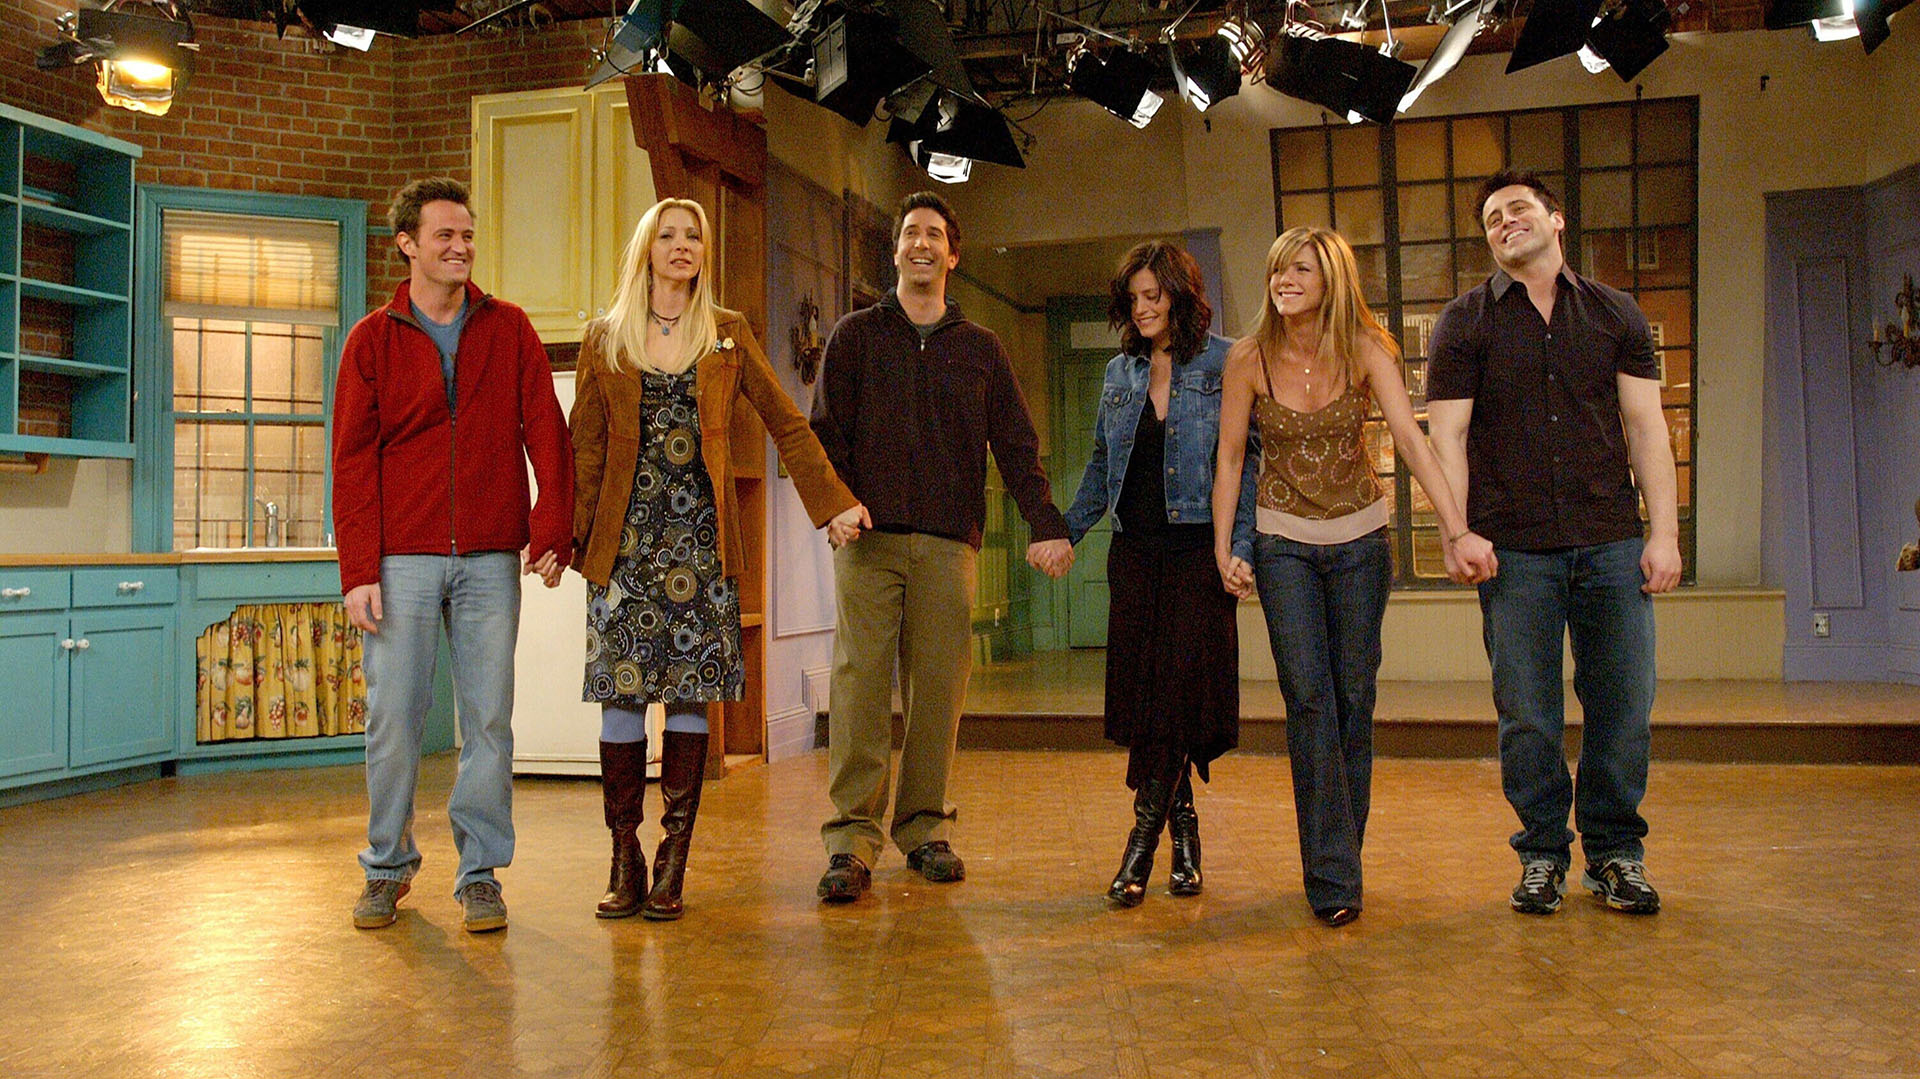 El último capítulo de Friends se emitió en 2004. En 2021 vuelve con un especial